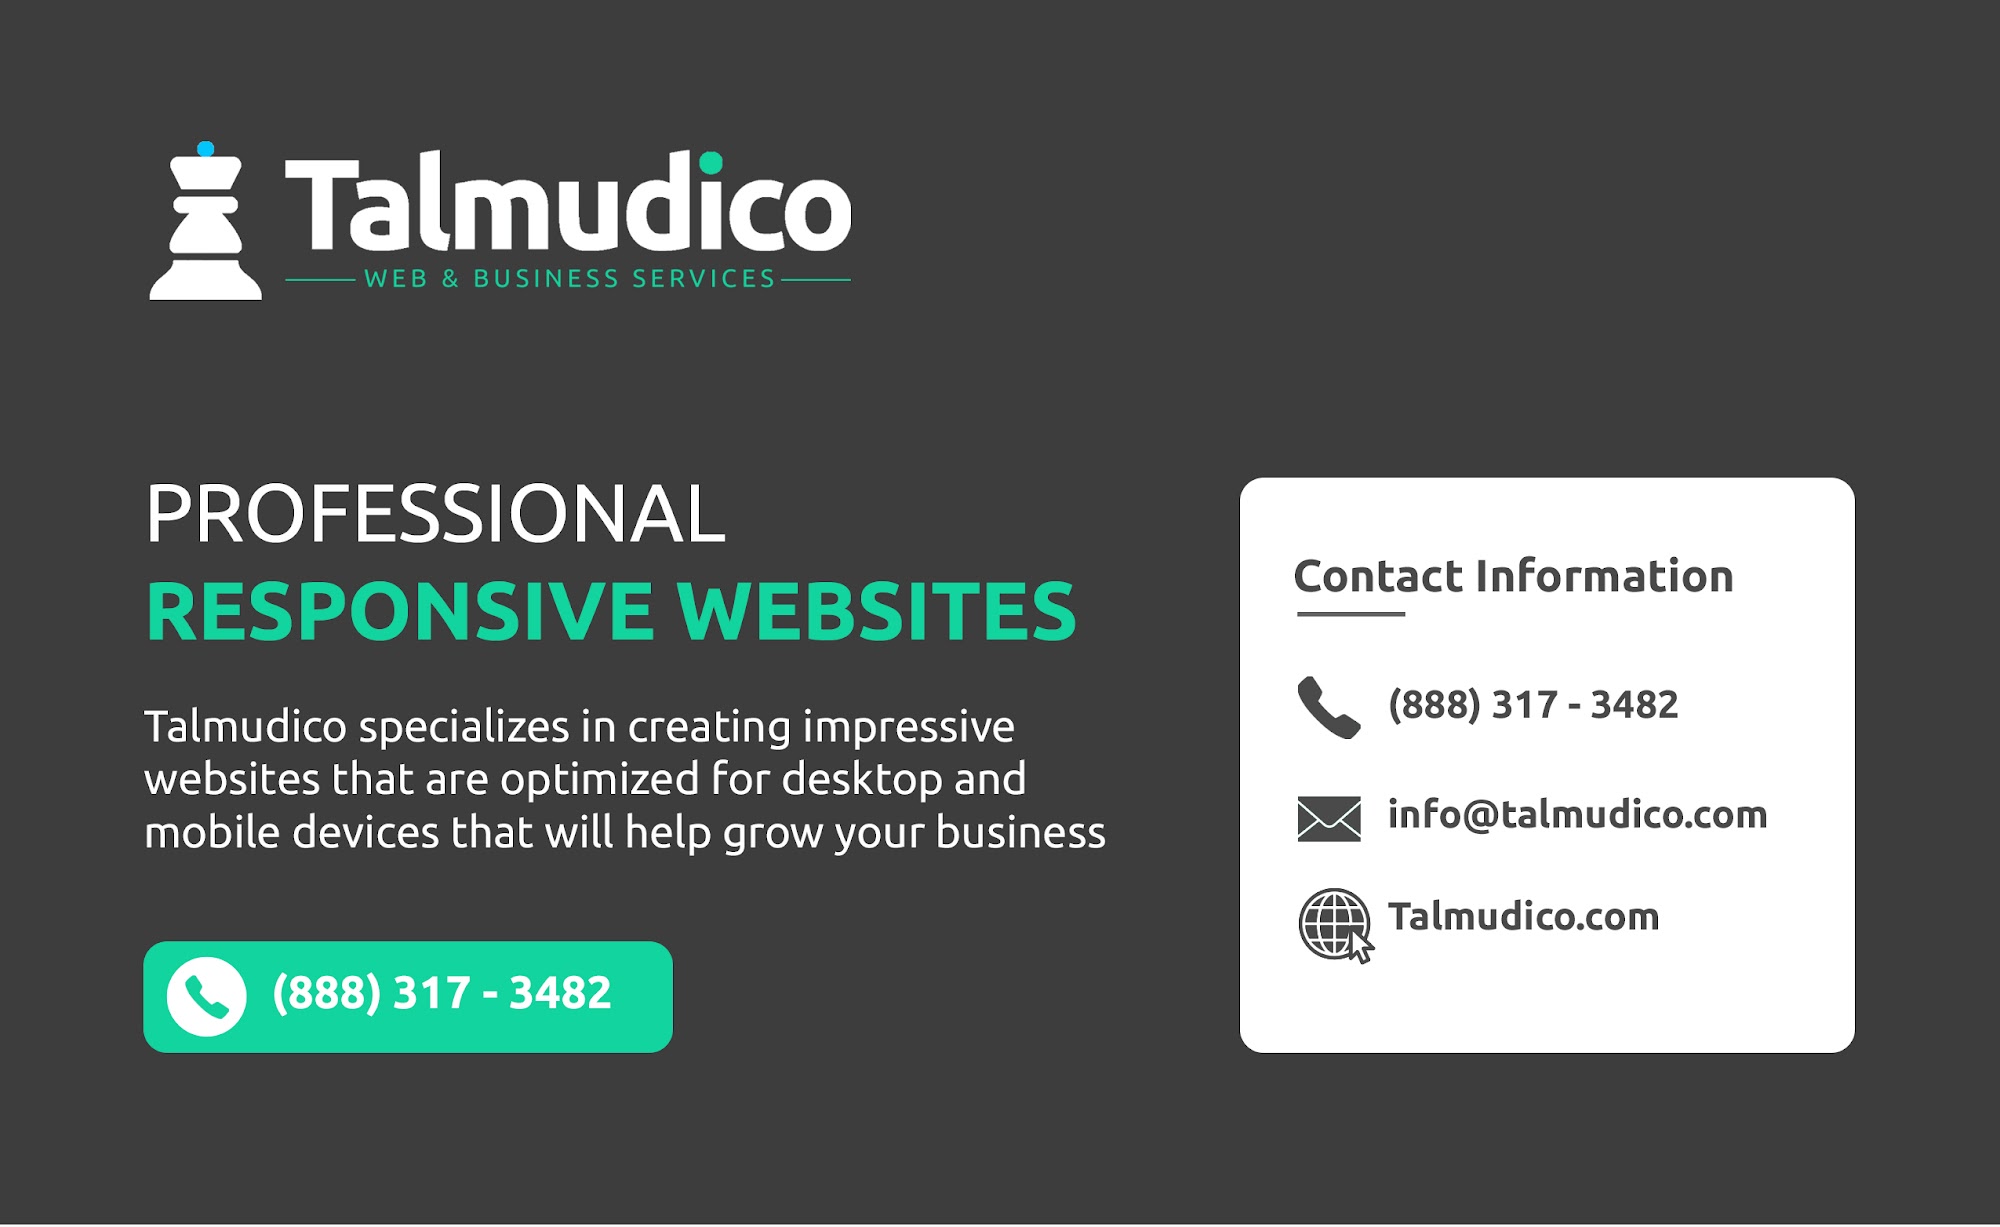 Talmudico Web & Business Services